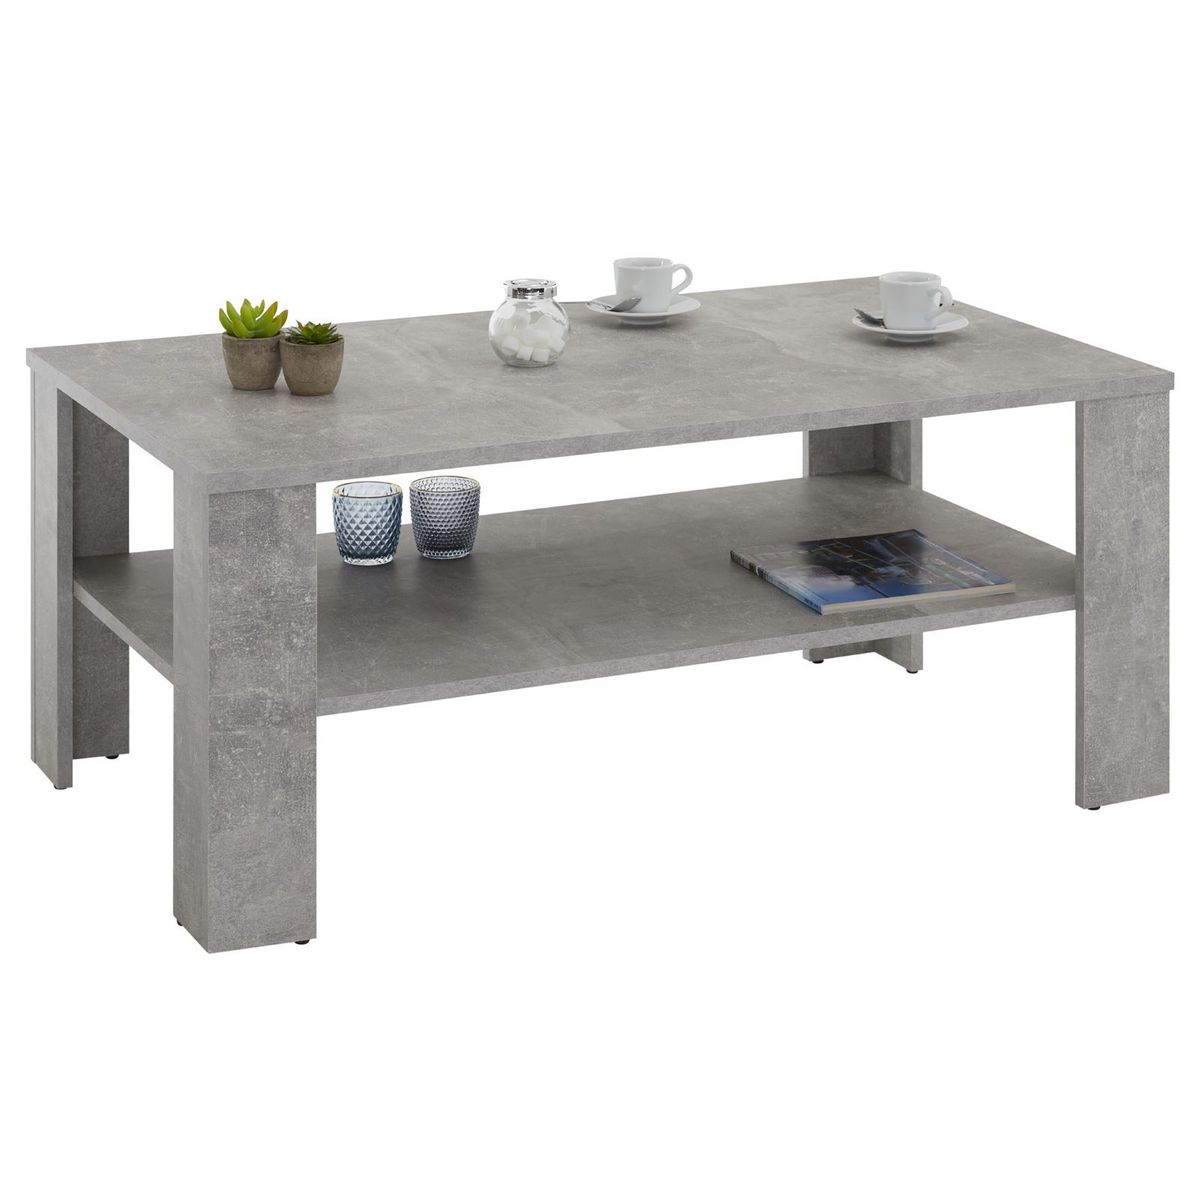 IDIMEX Table basse LORIENT, table de salon rectangulaire avec 1 étagère espace de rangement ouvert, en mélaminé décor béton